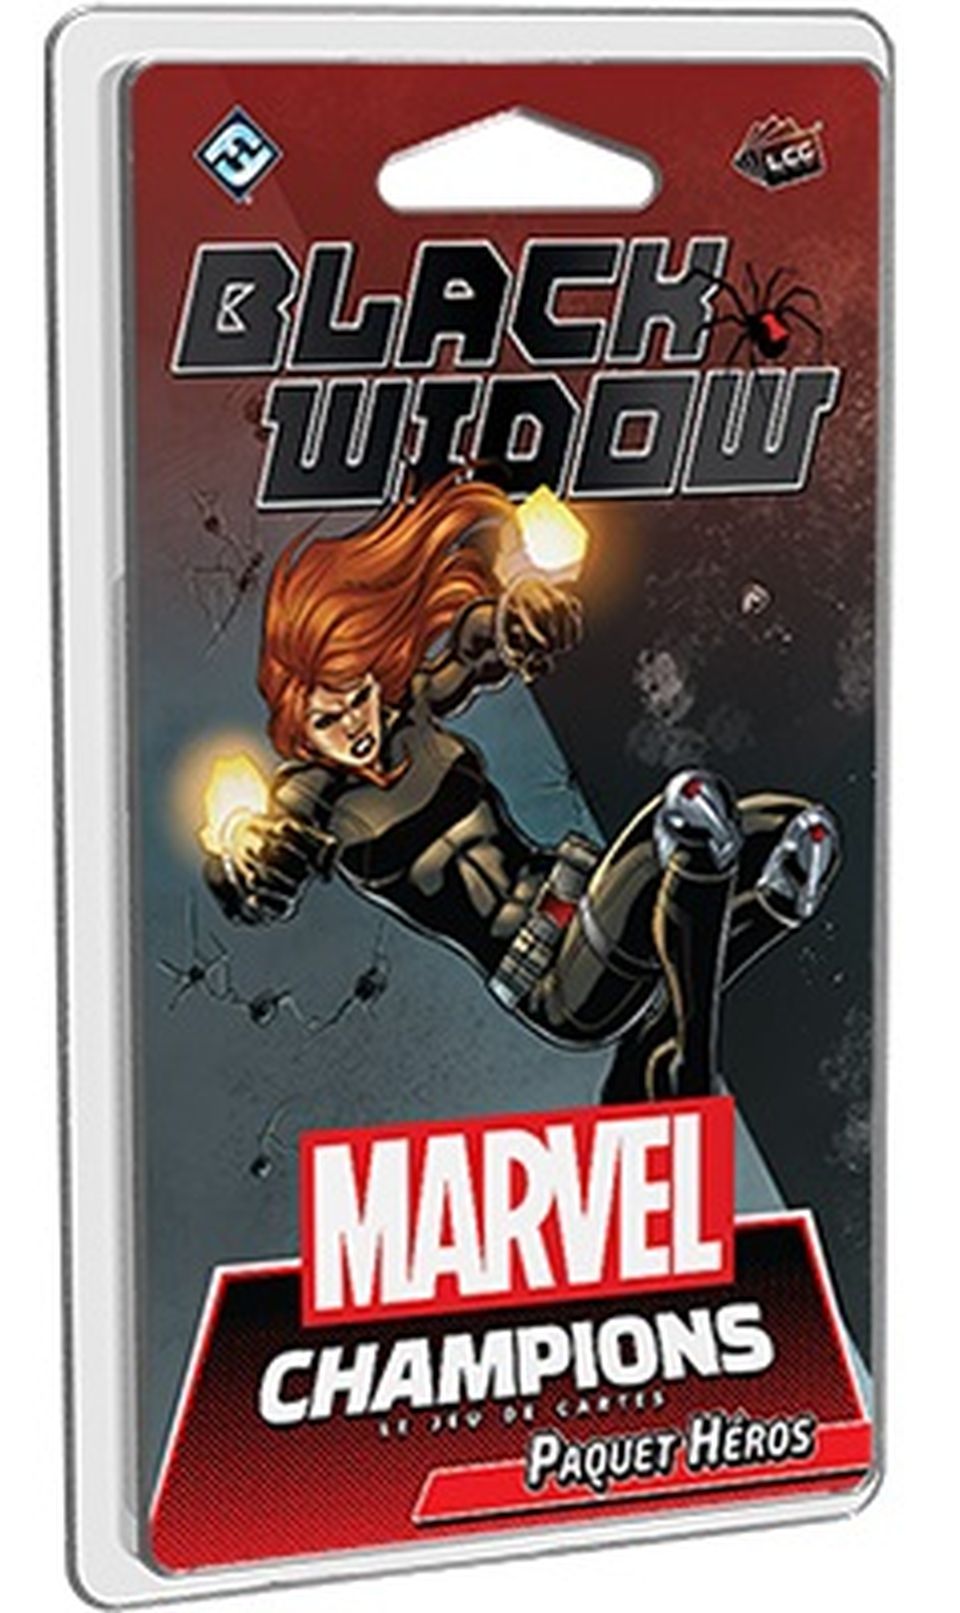 Marvel Champions : Le jeu de cartes - Black Widow (Paquet Héros) image